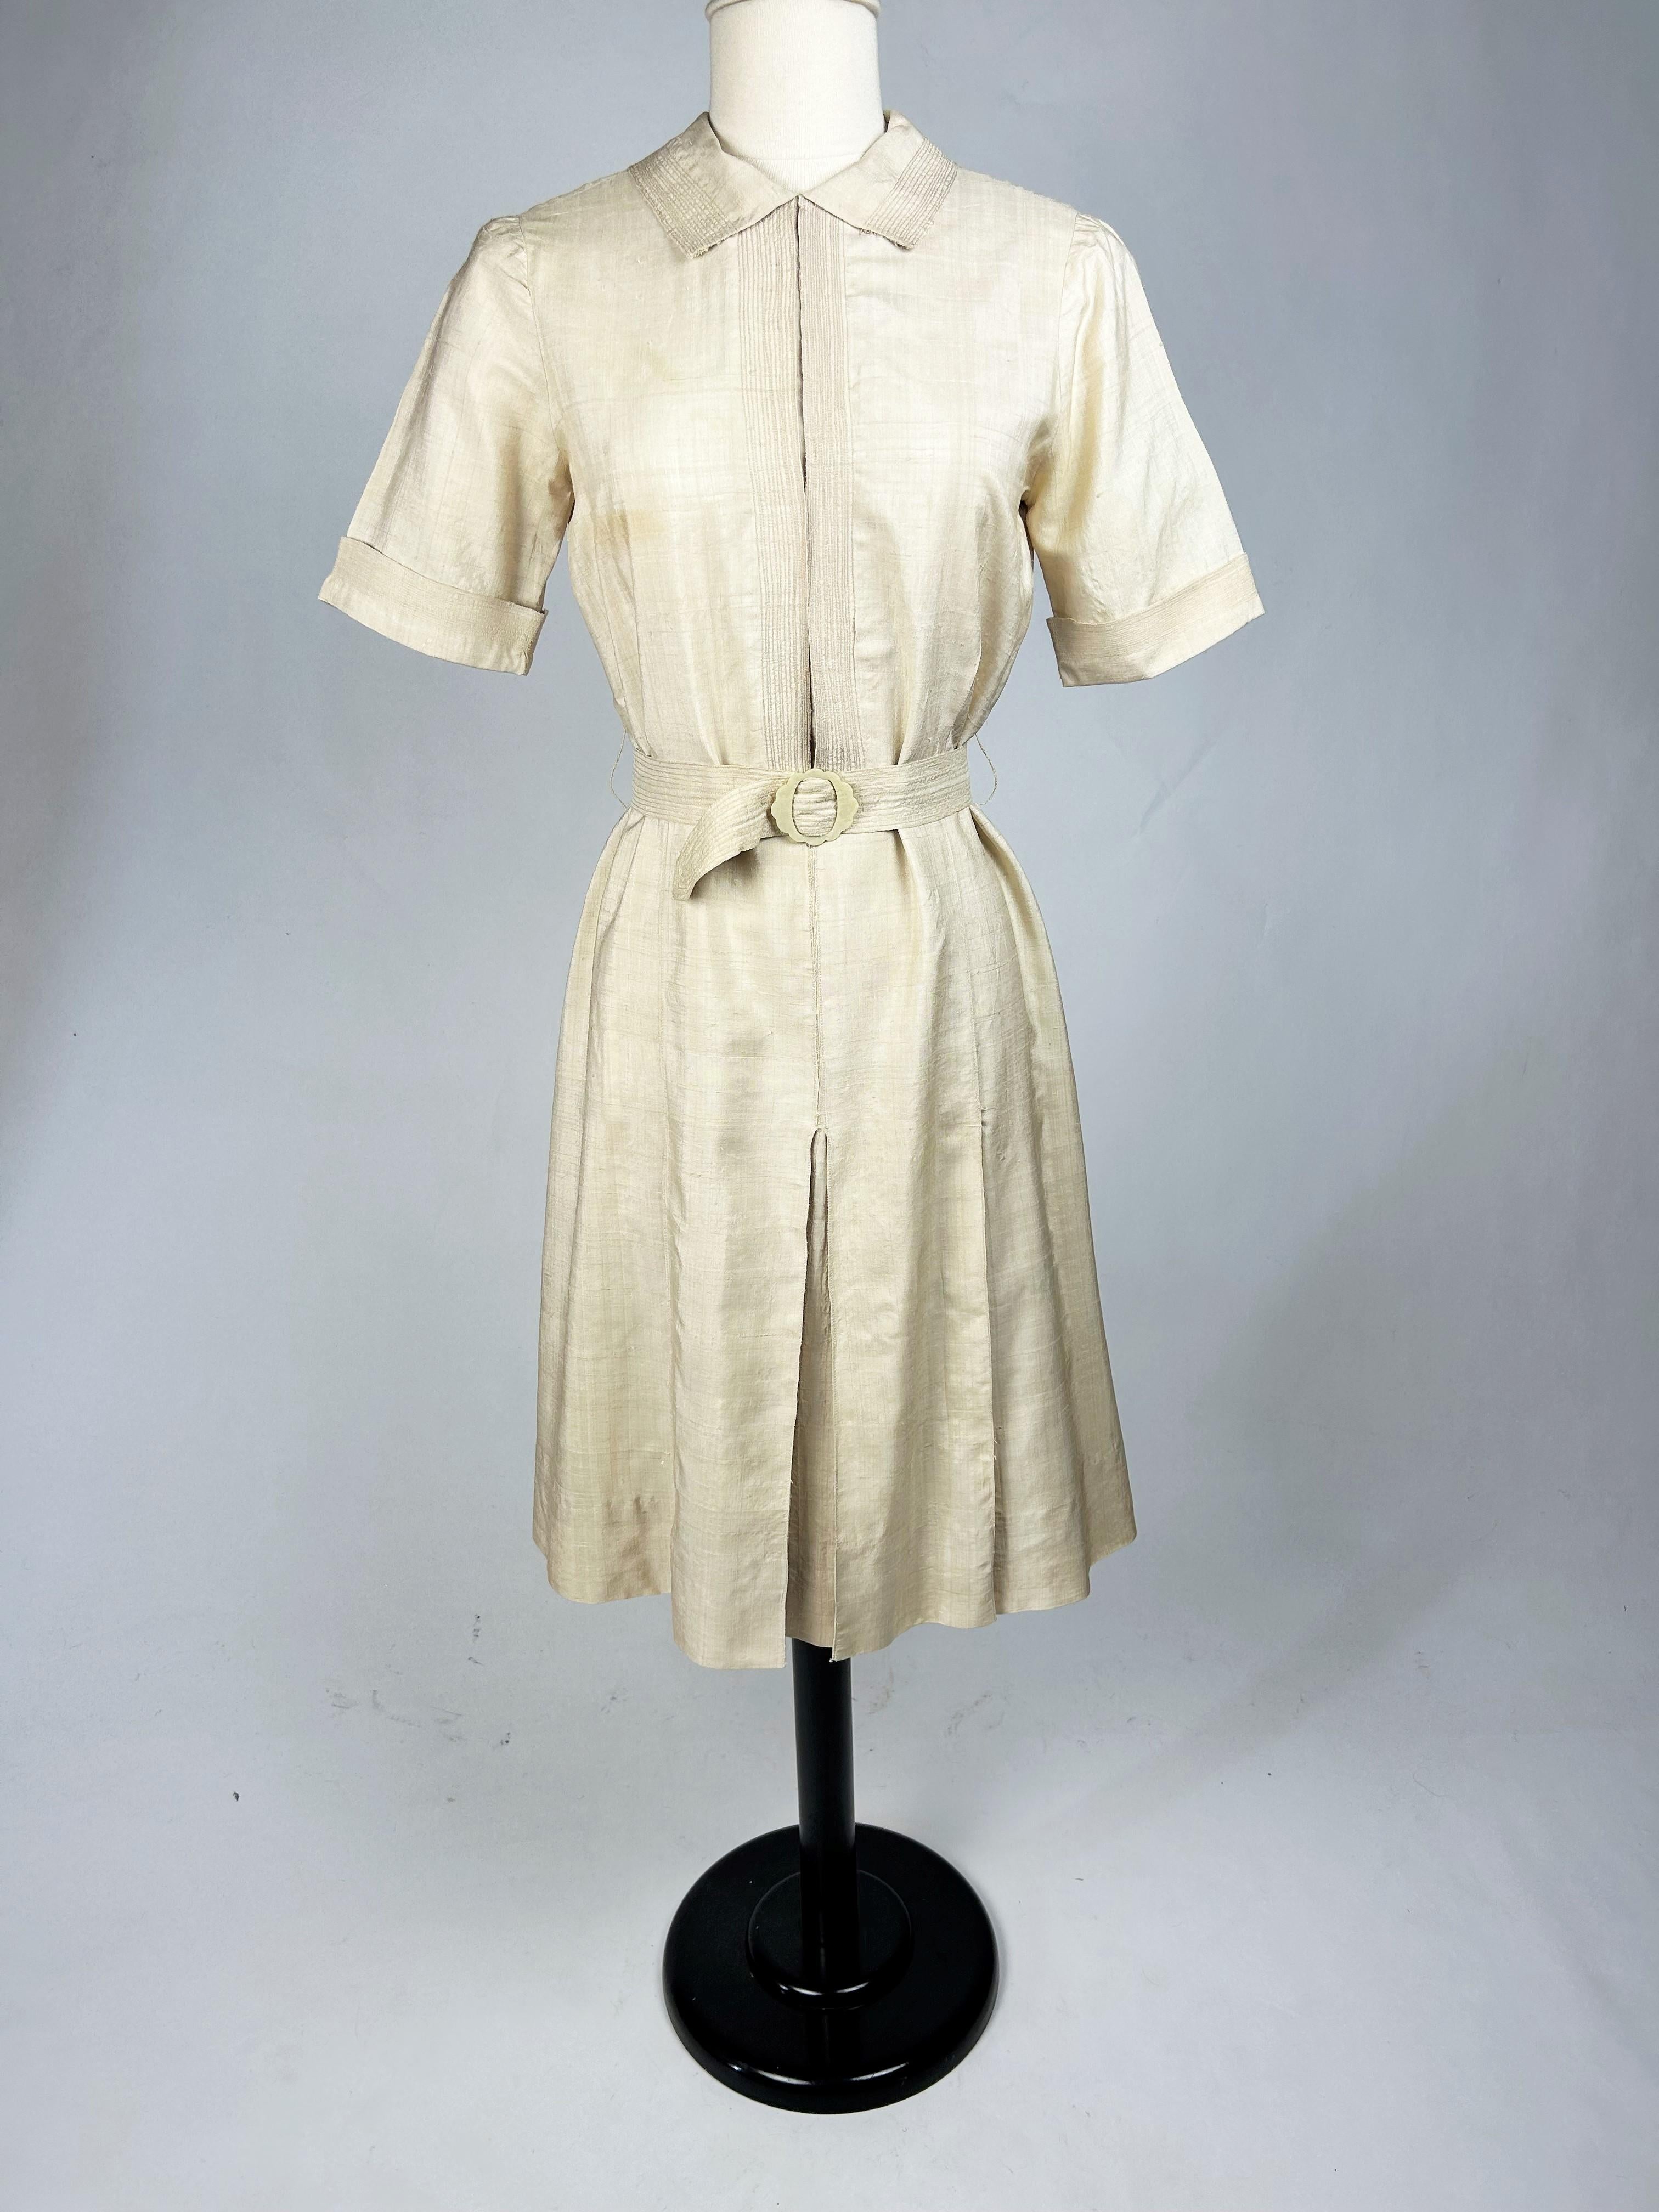 CIRCA 1930-1940

Frankreich

Elegantes Sommerkleid aus ungebleichter Rohseide aus den 1930er-1940er Jahren, inspiriert von den schlichten, lockeren Schnitten von Mademoiselle Chanel. Gerade geschnittenes Kleid mit kleinem